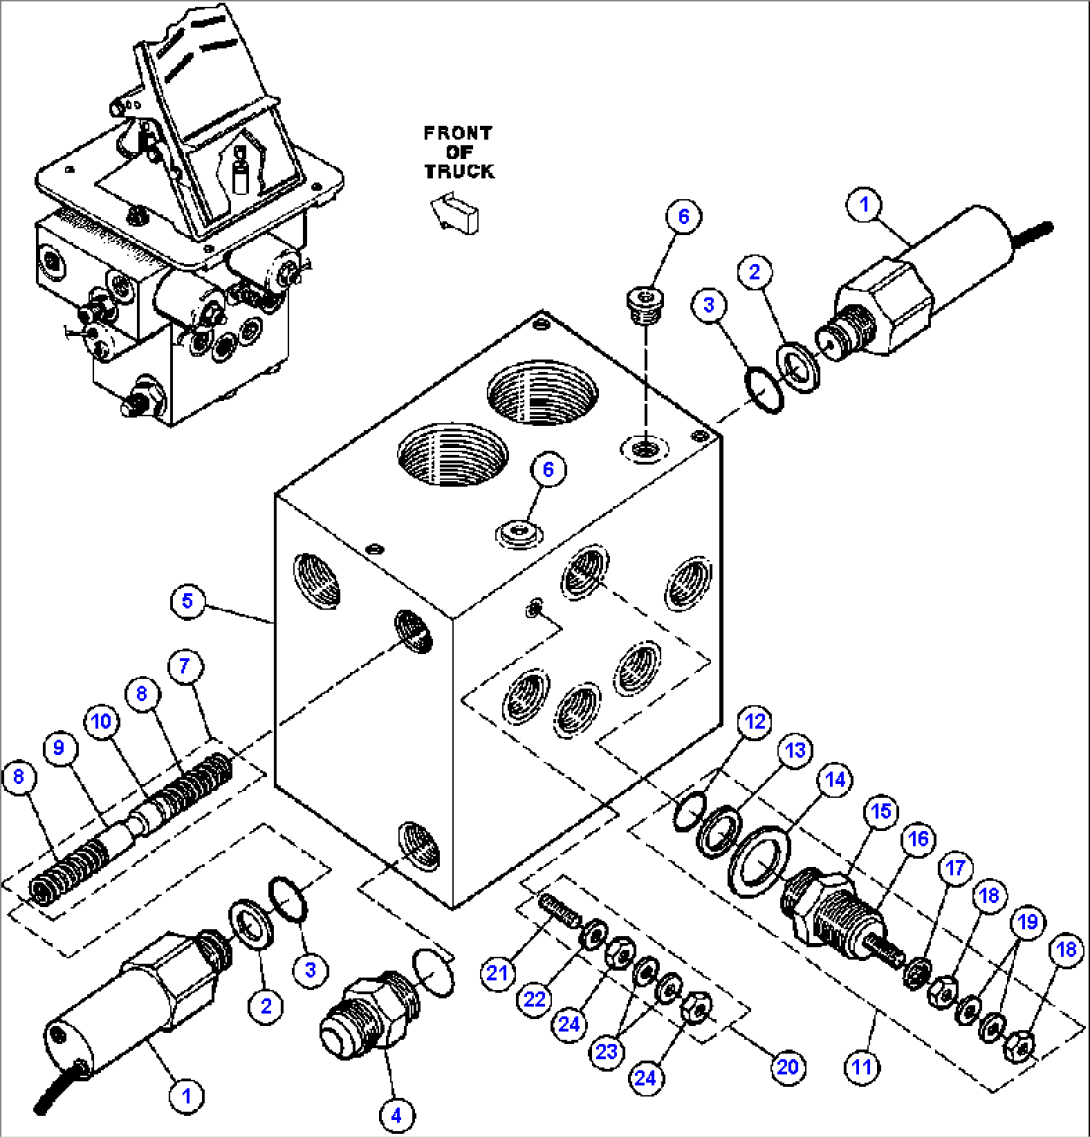 DUAL CONTROLLER SUB-ASSM - 1 (VE1249)